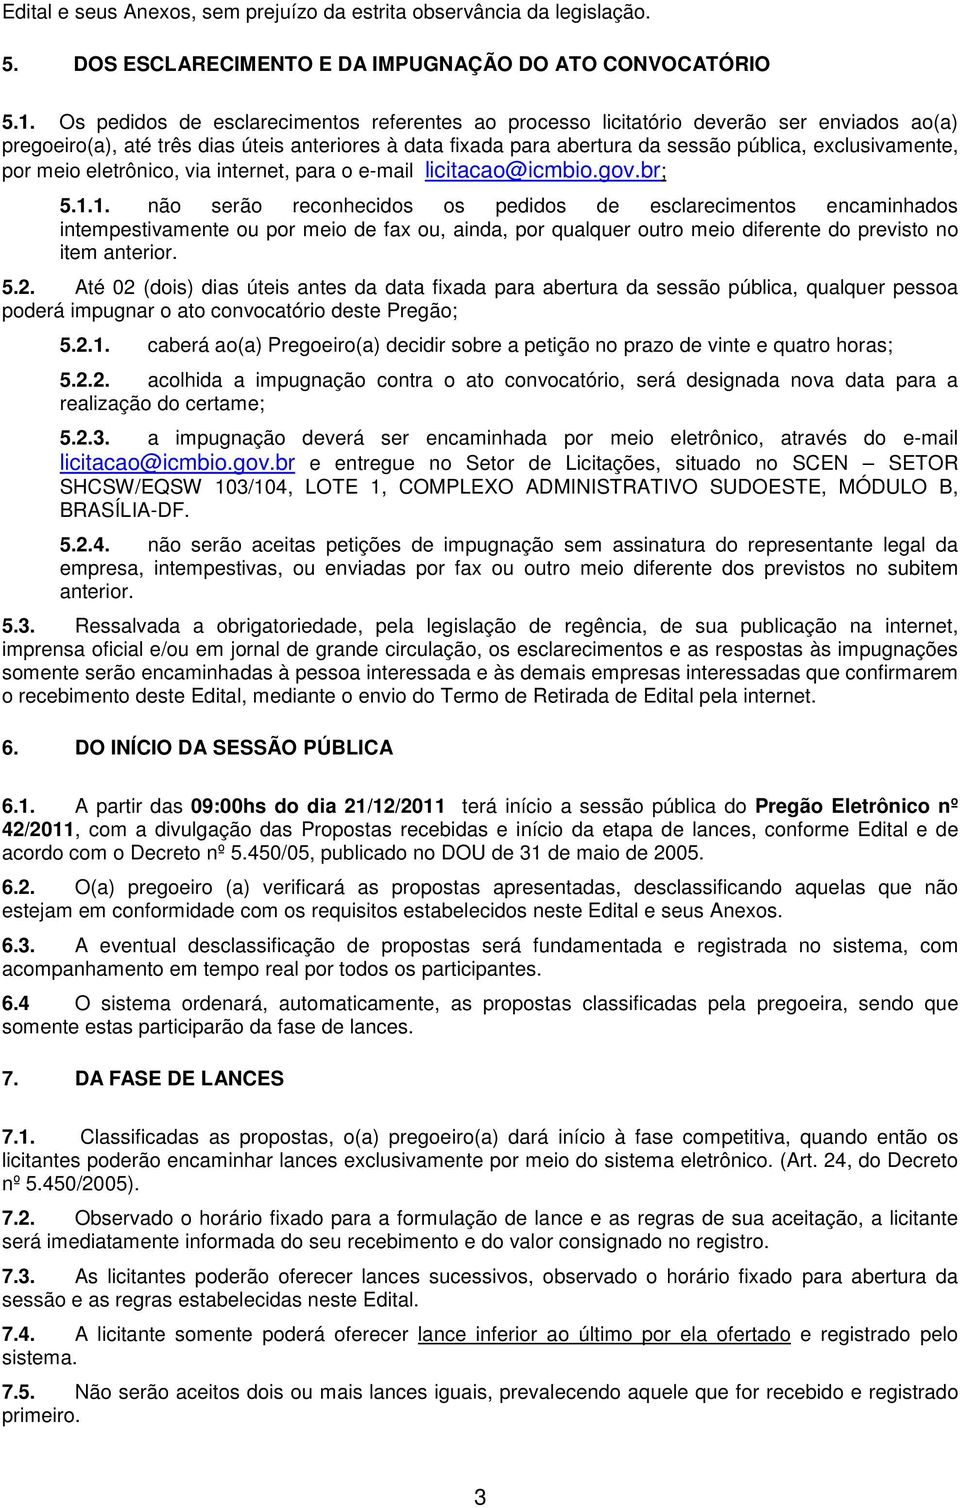 por meio eletrônico, via internet, para o e-mail licitacao@icmbio.gov.br; 5.1.